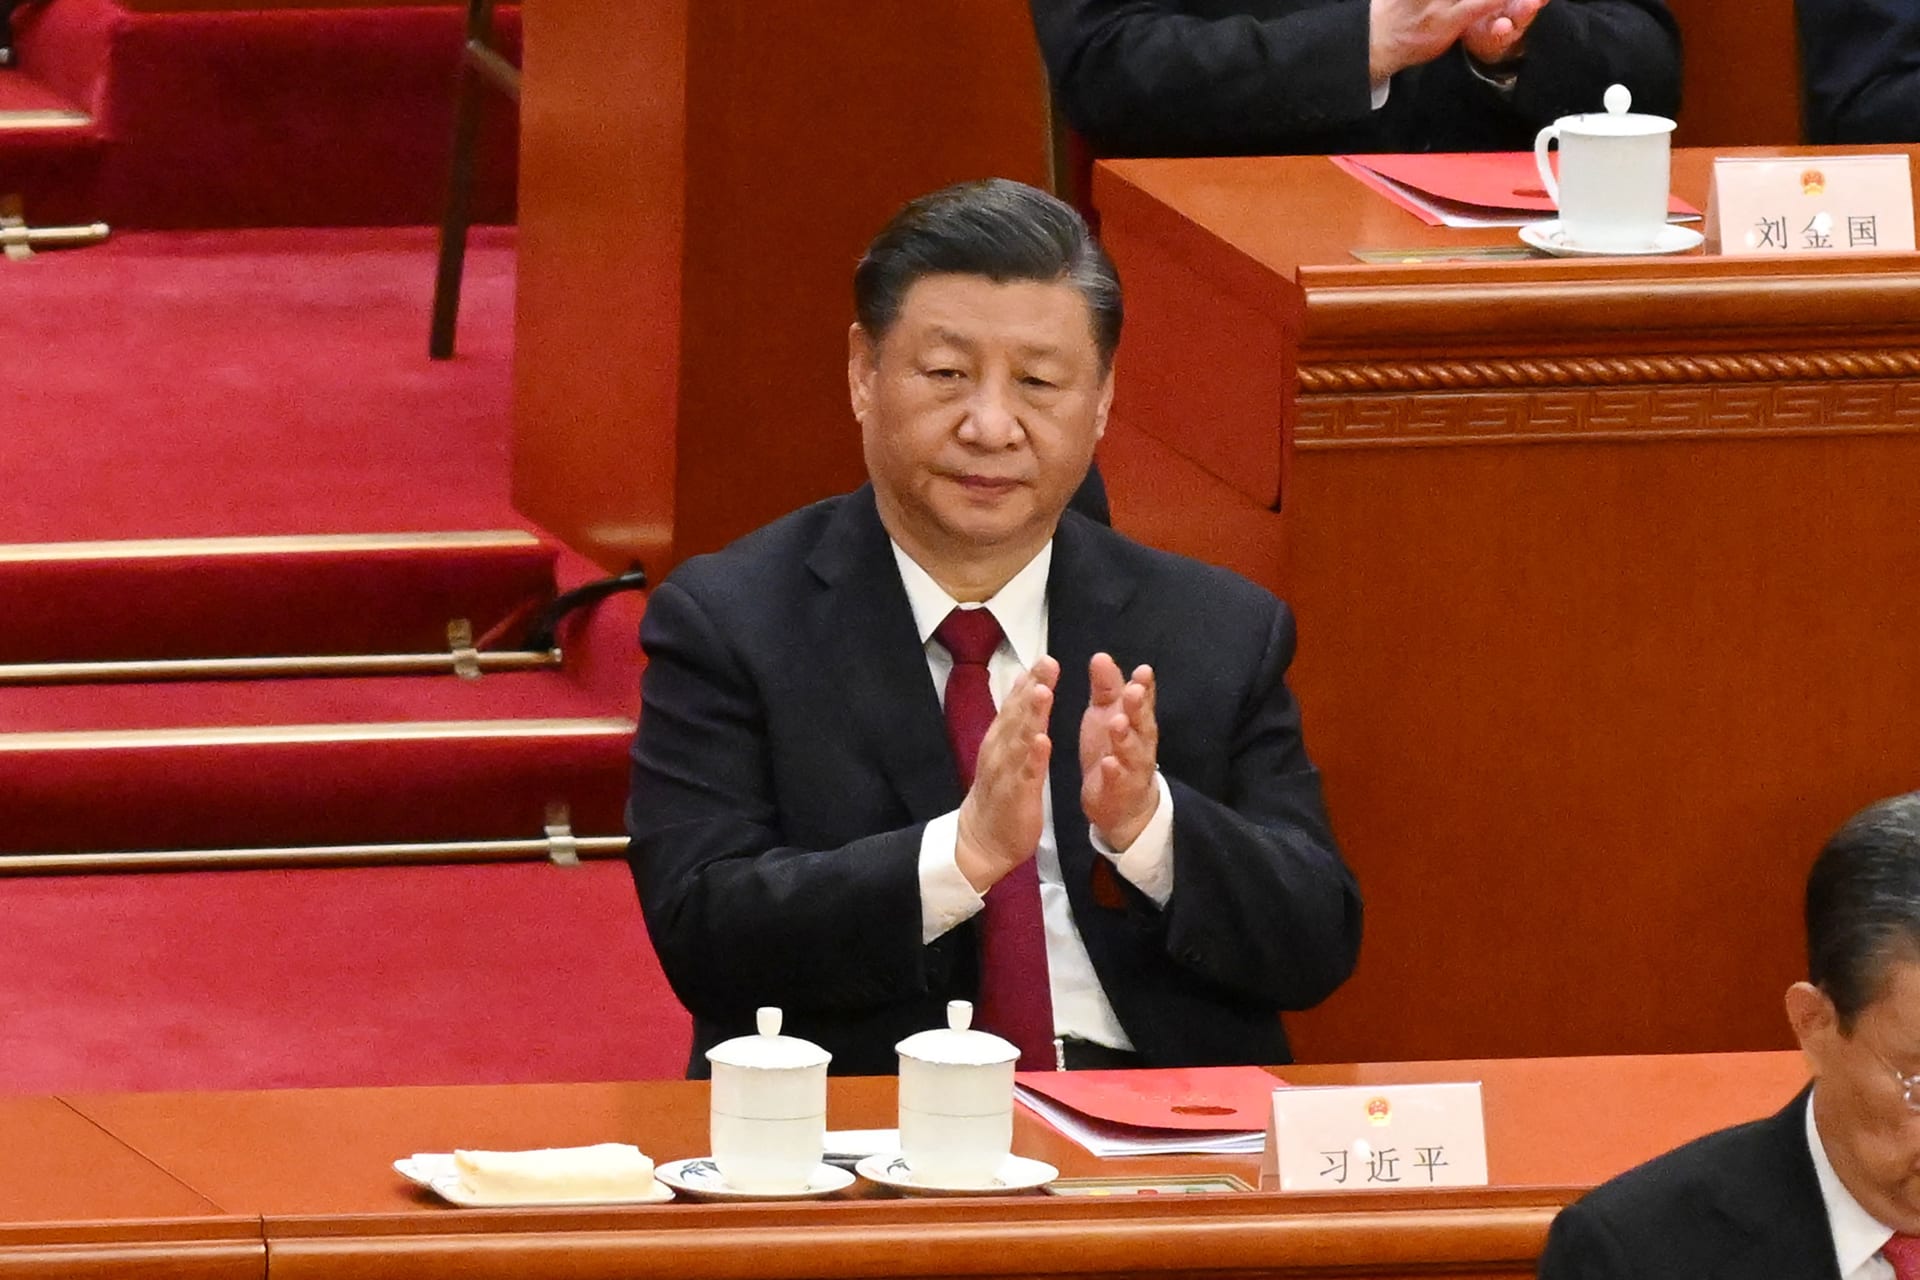 رئيس الصين في مقال قبل زيارته لروسيا: بكين شجعت مفاوضات السلام في أوكرانيا